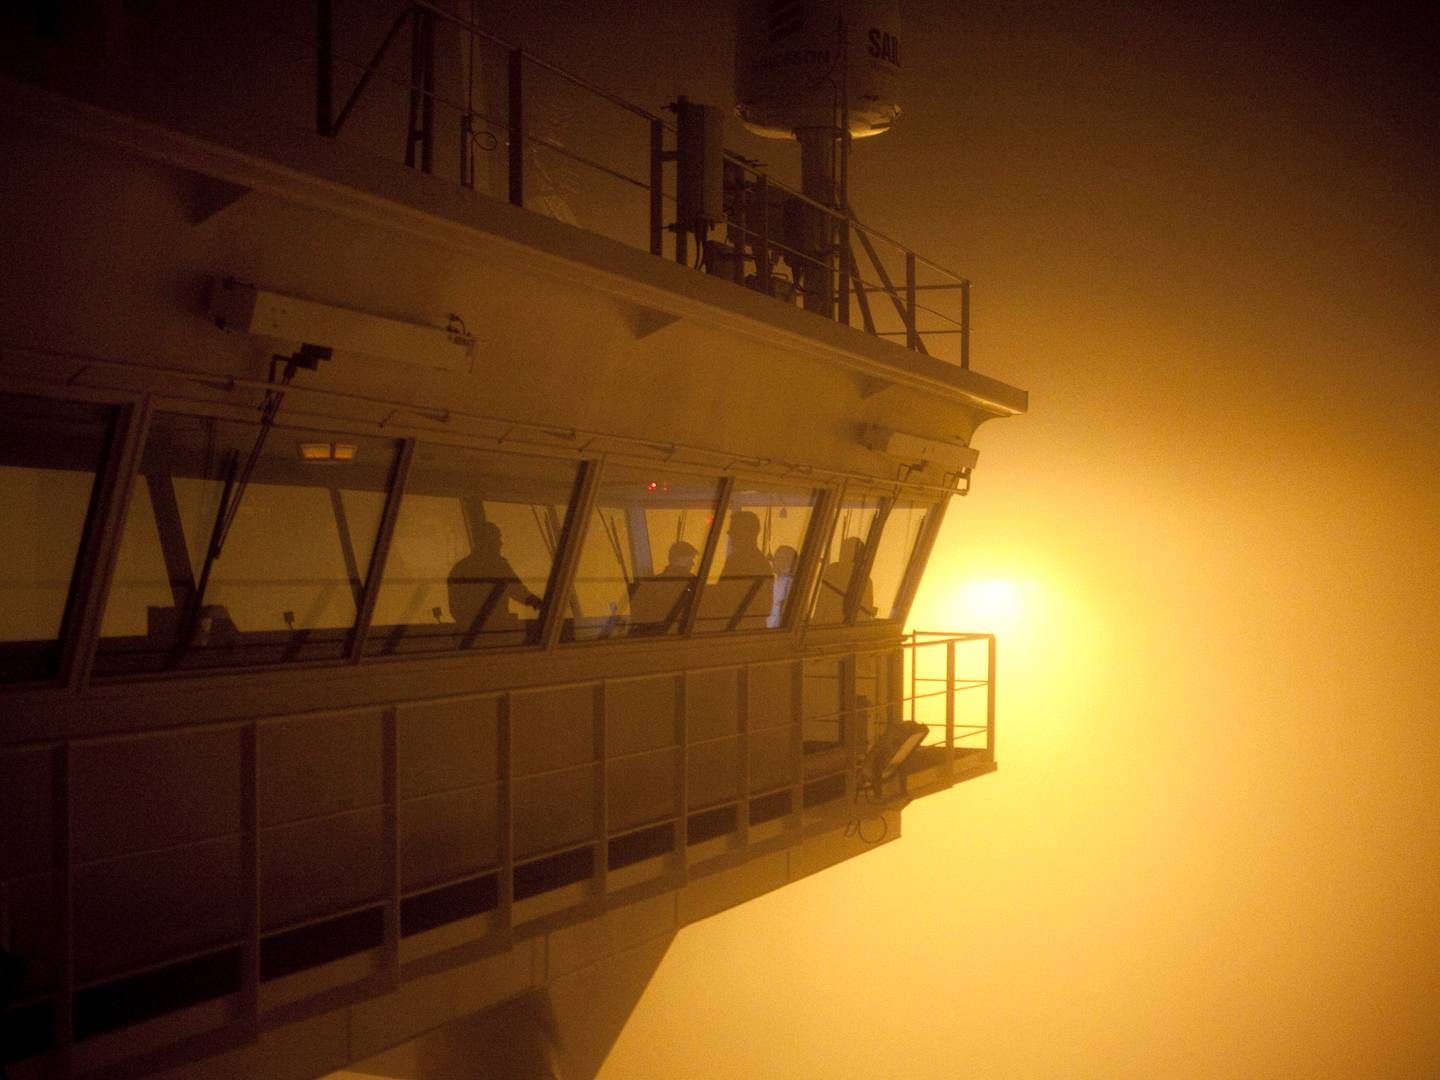 Eleonora Mærsk er et af verdens største containerskibe. Hun kan transportere 153.000 tons og sejler mellem Europa og Asien. Her befinder hun sig i tåge mellem Rotterdam og Bremerhaven. | Foto: Mie Brinkmann